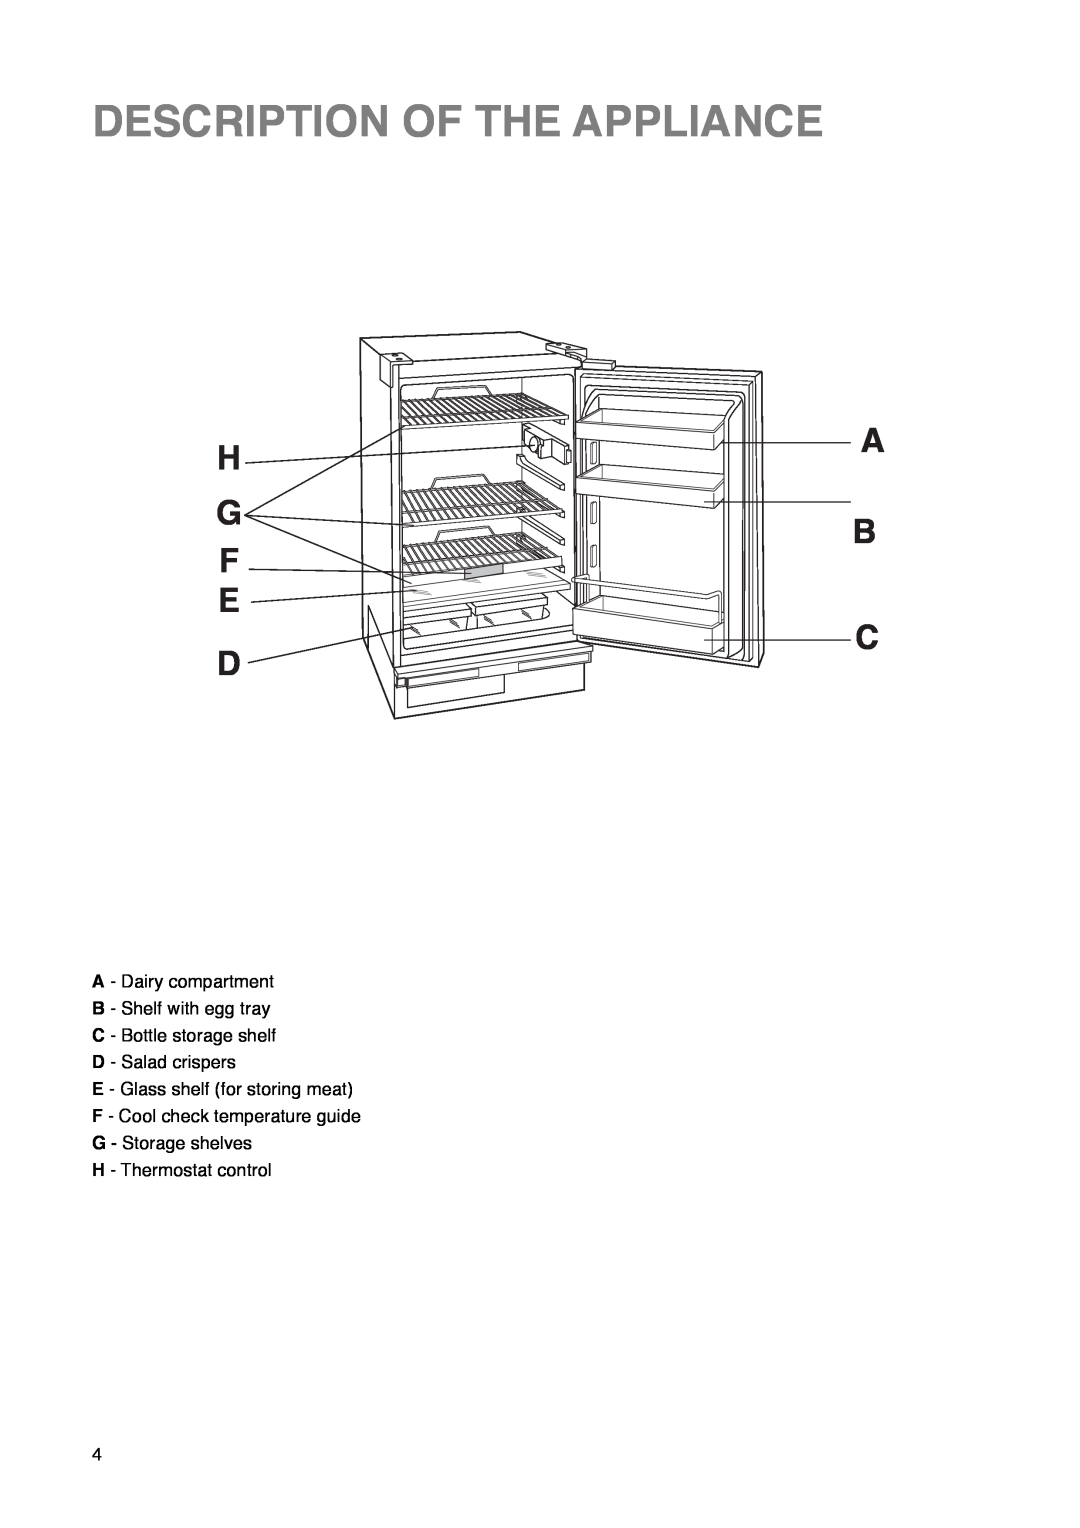 Zanussi ZU 7115 manual Description Of The Appliance, H G F E D, A B C 